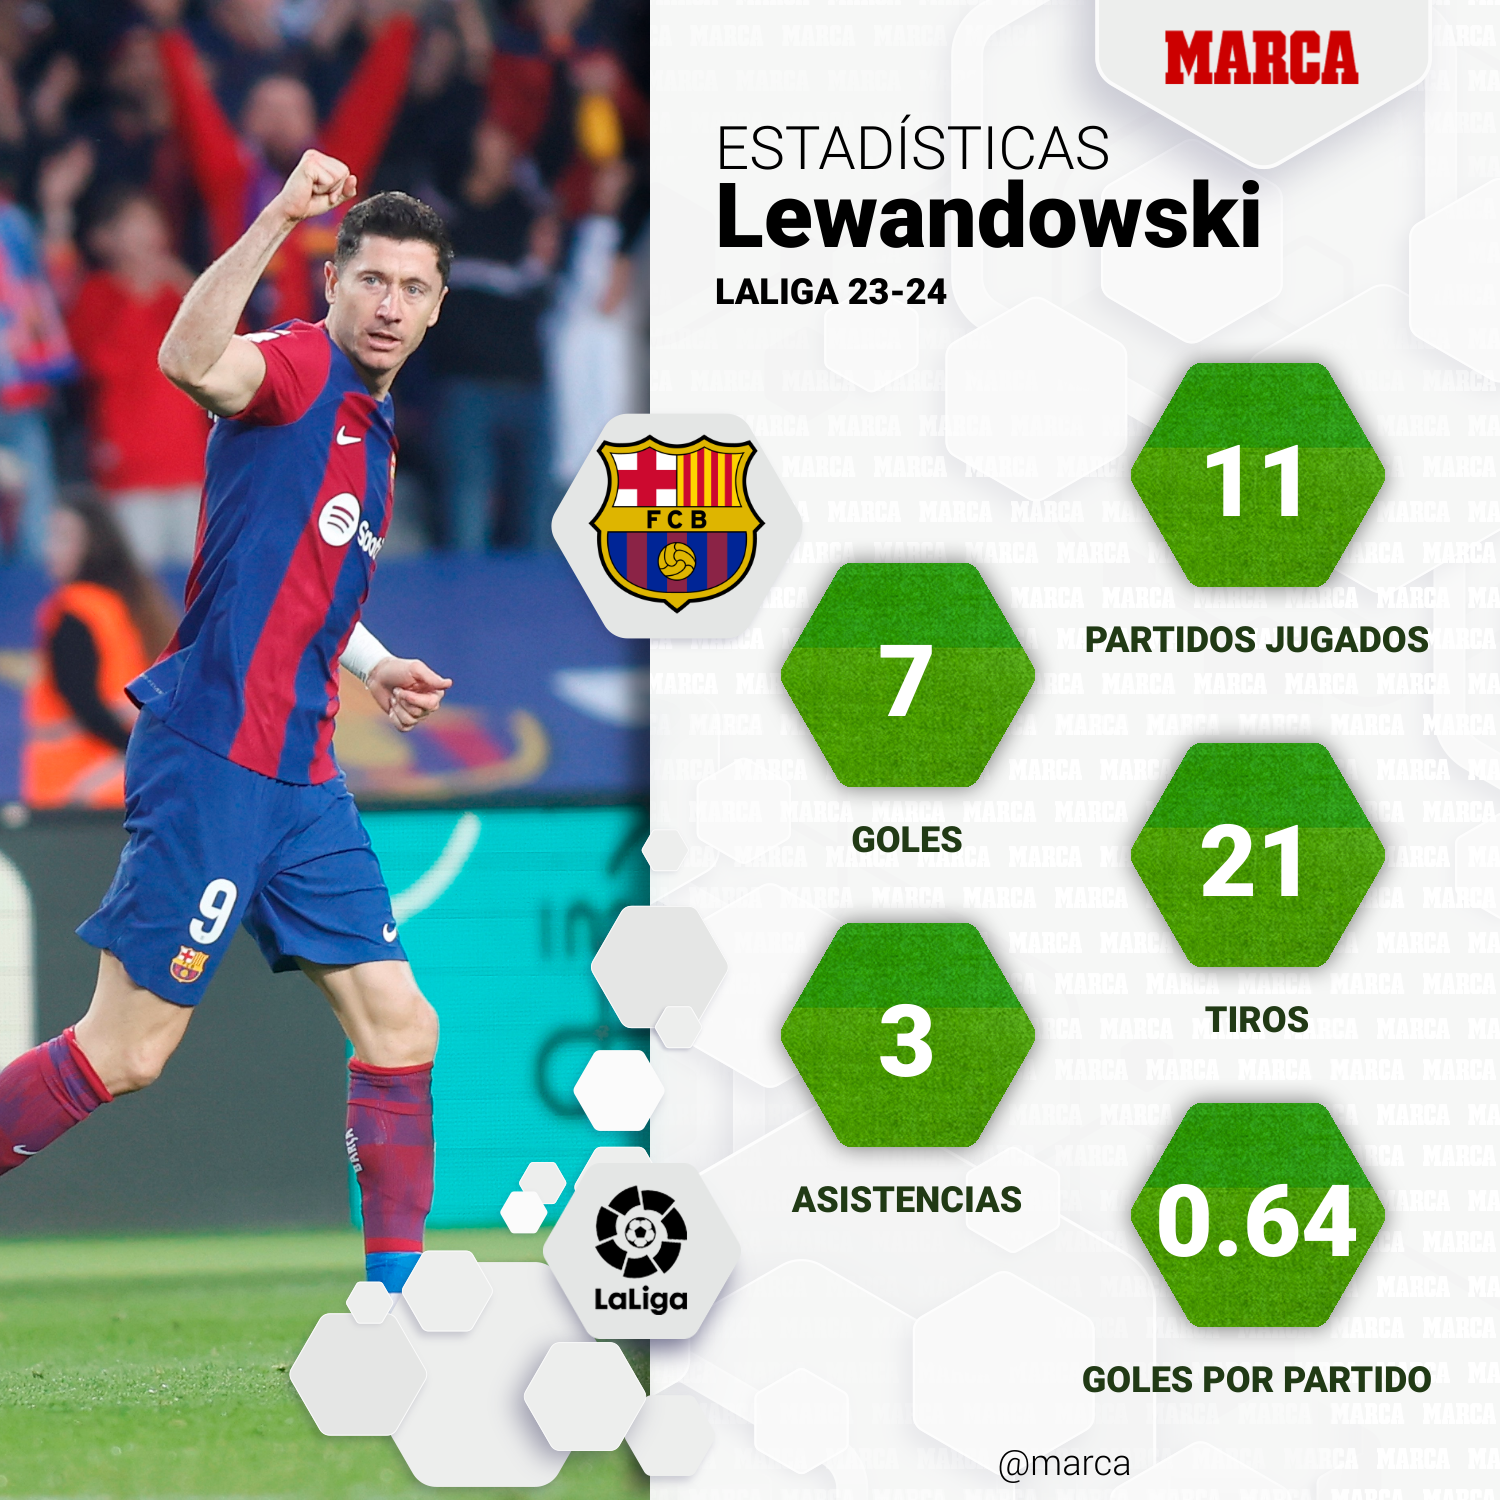 Las estadísticas de Lewandowski en LaLiga 23-24